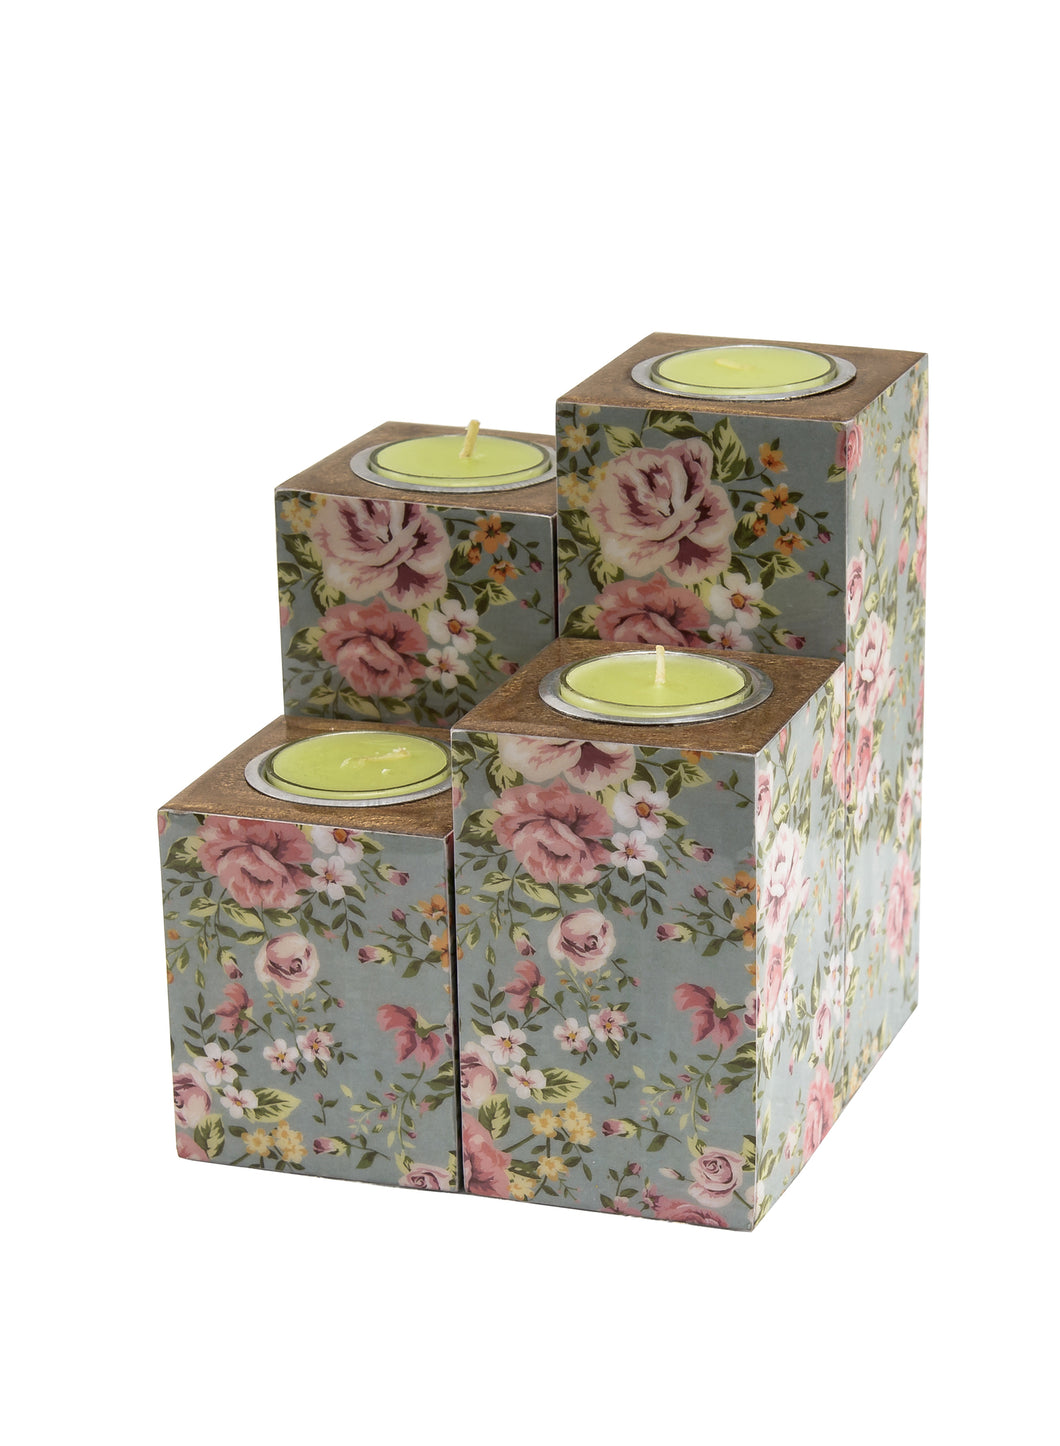 Set of 4 Candle Holder in Floral Design